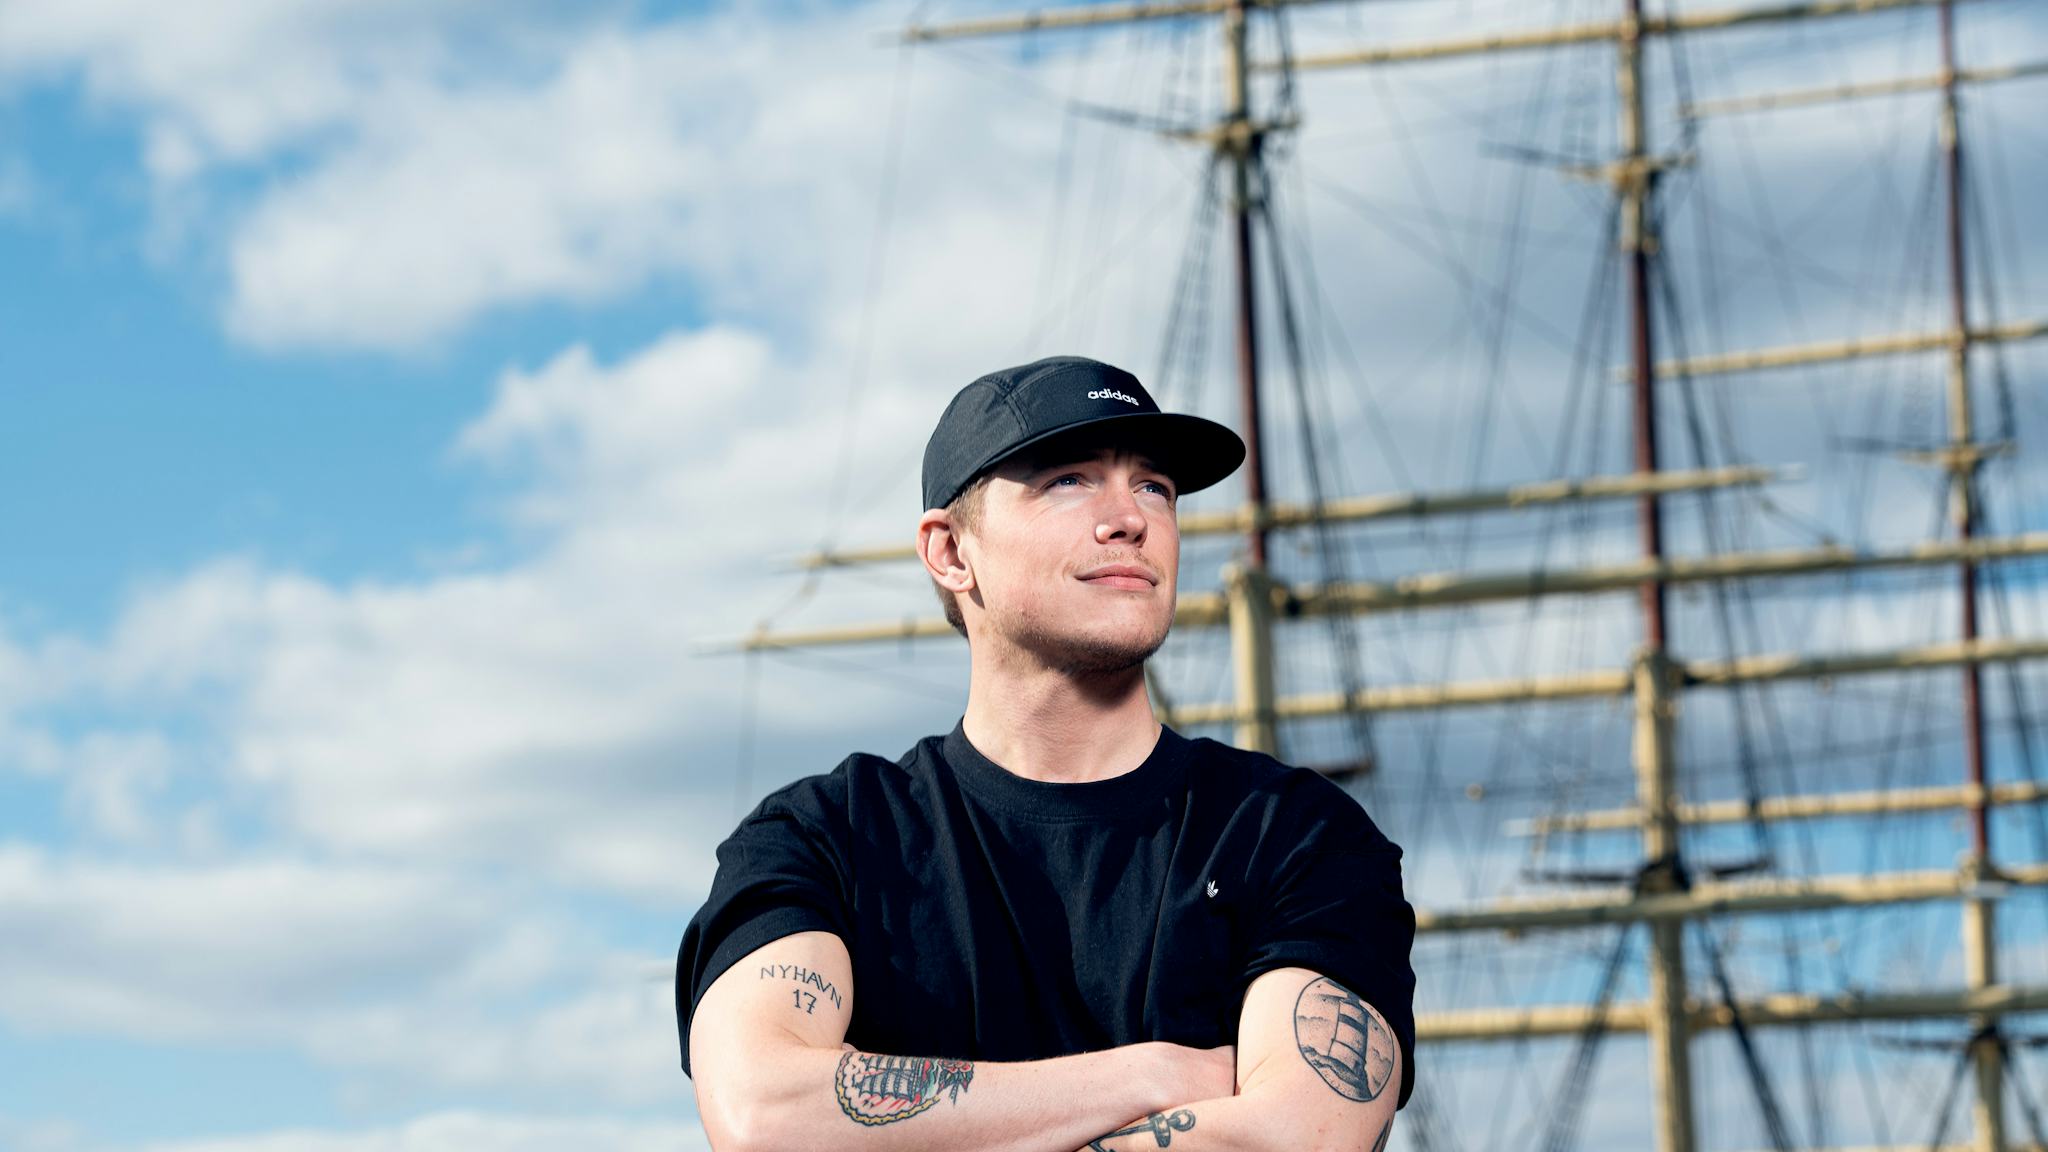 Charlie Johansson framför masten på en båt.